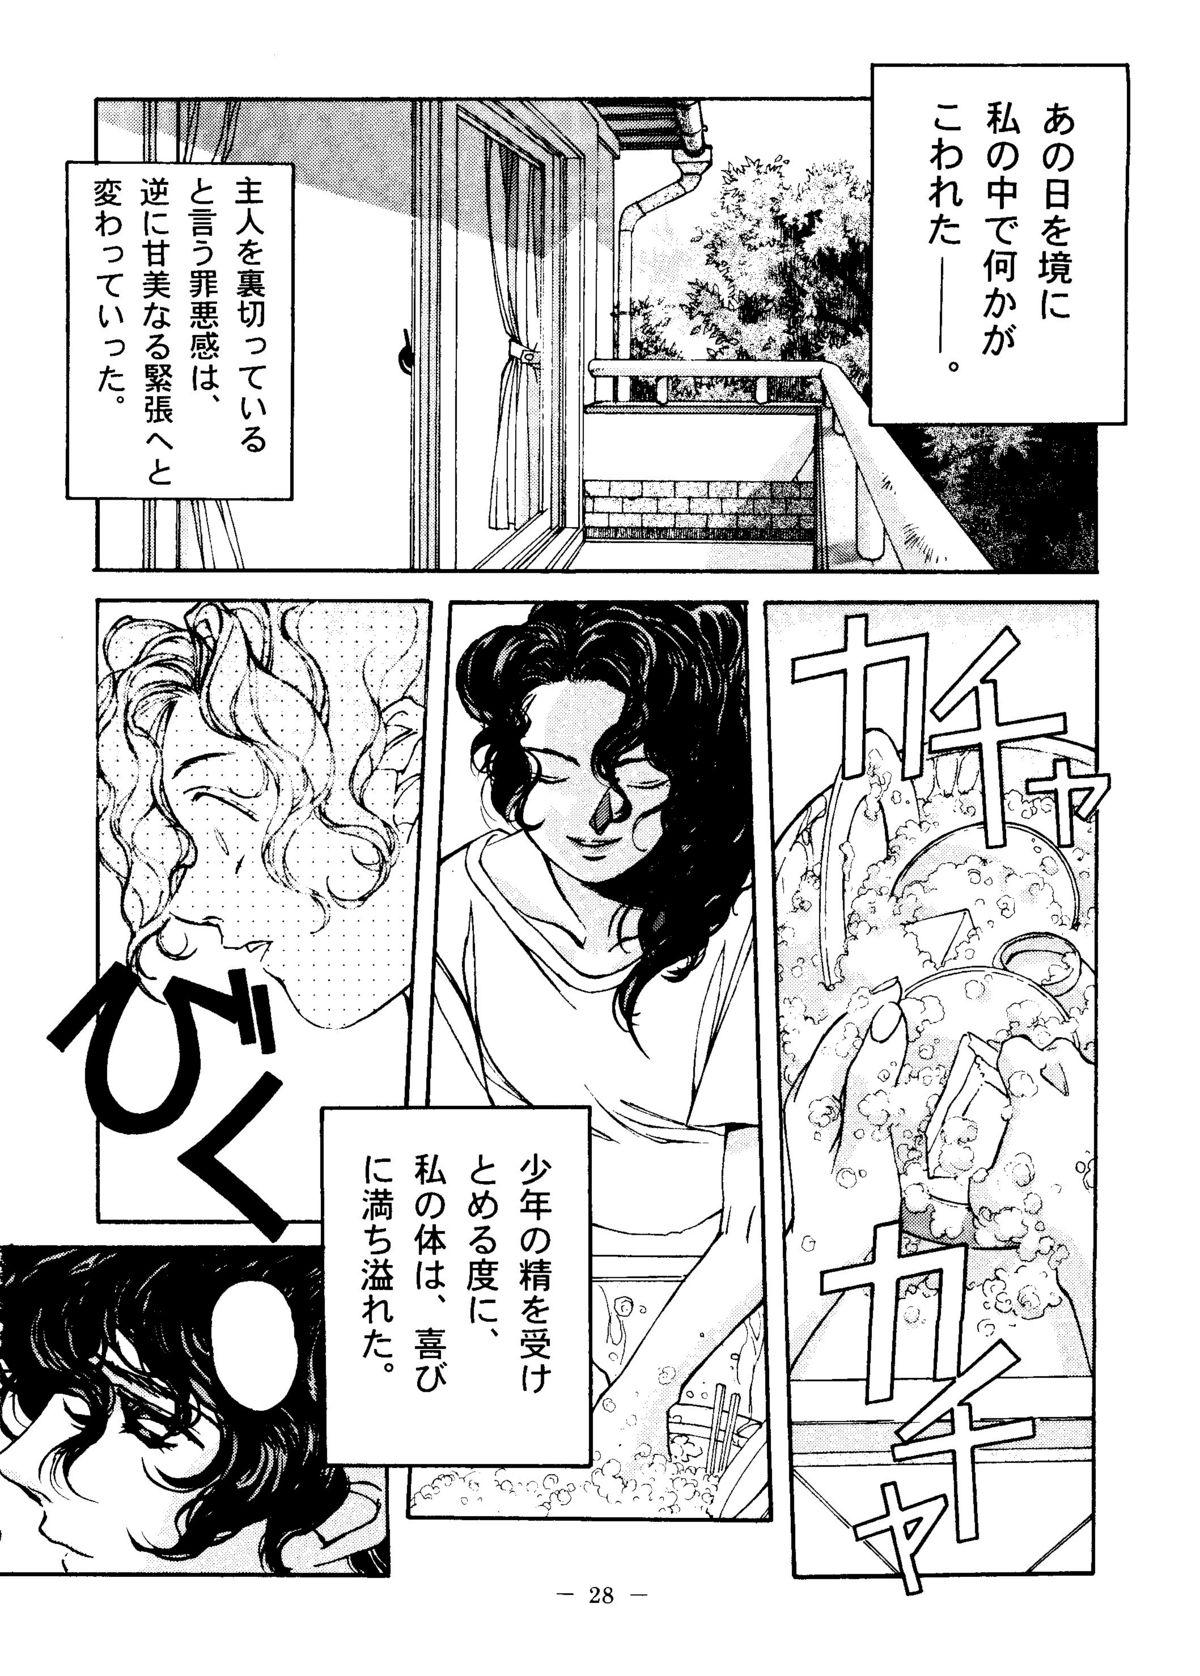 Otonano Do-wa Vol. 6 26